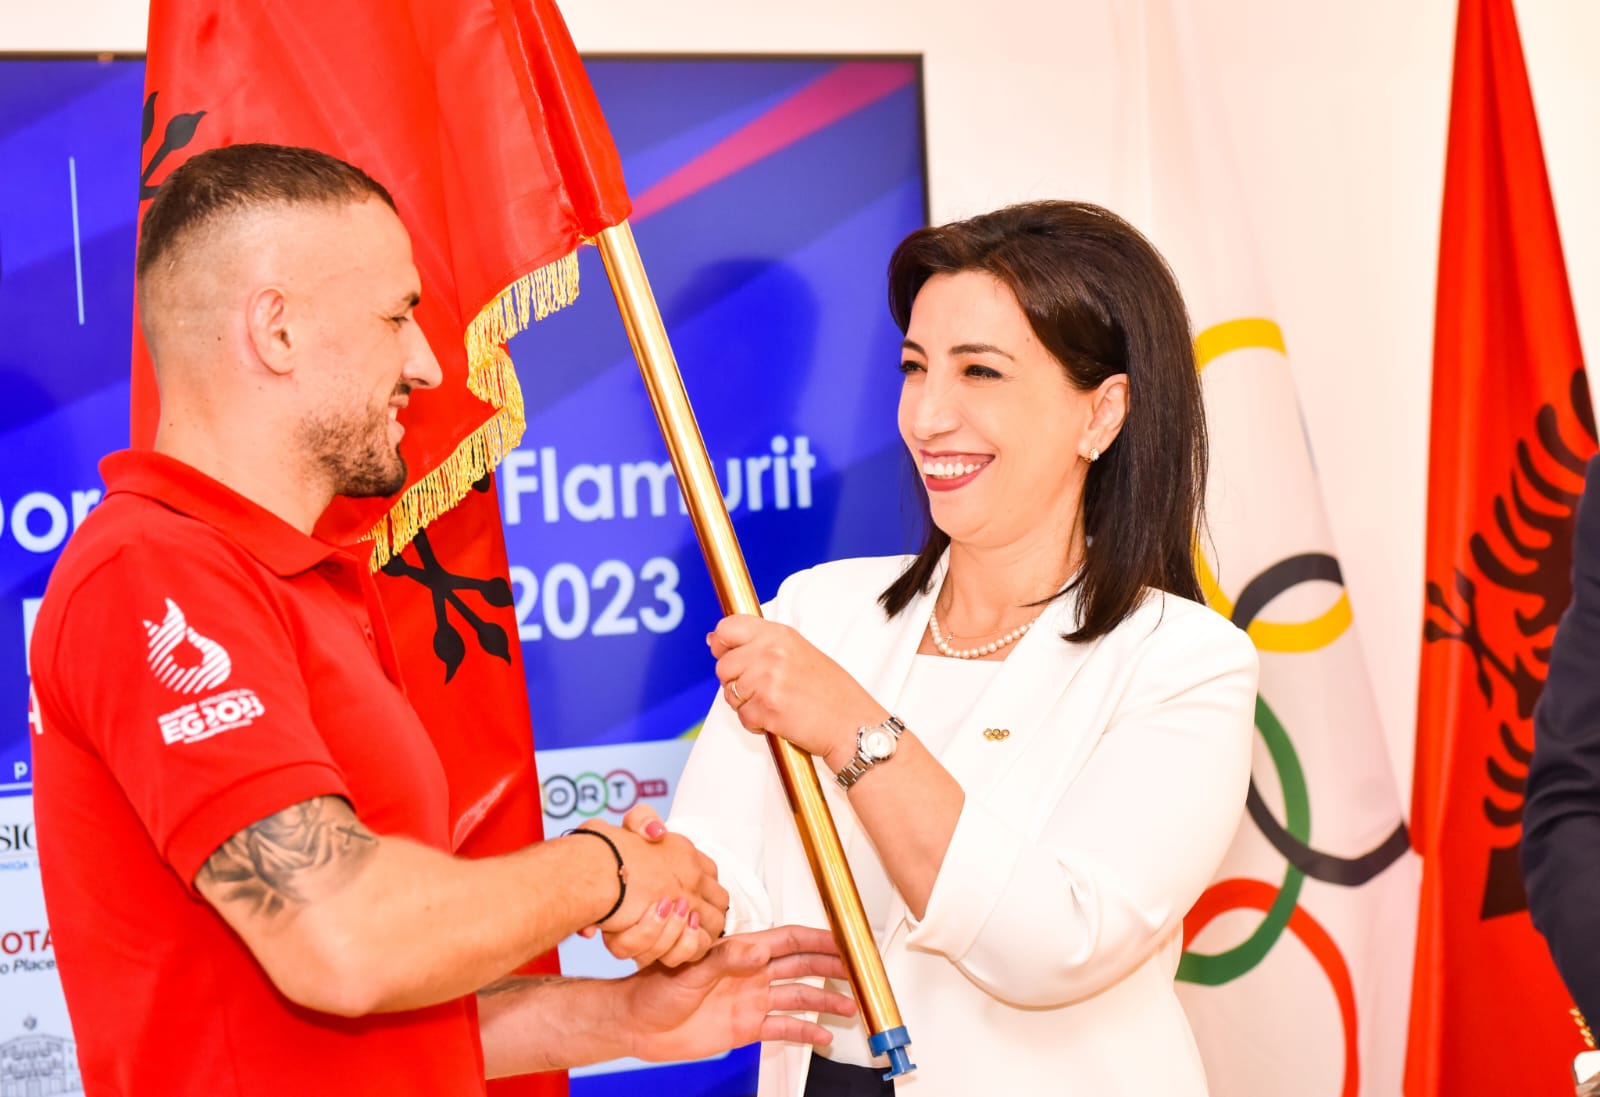 Lojërat Evropiane 2023, Kushi i dorëzon flamurin sportistëve elitarë